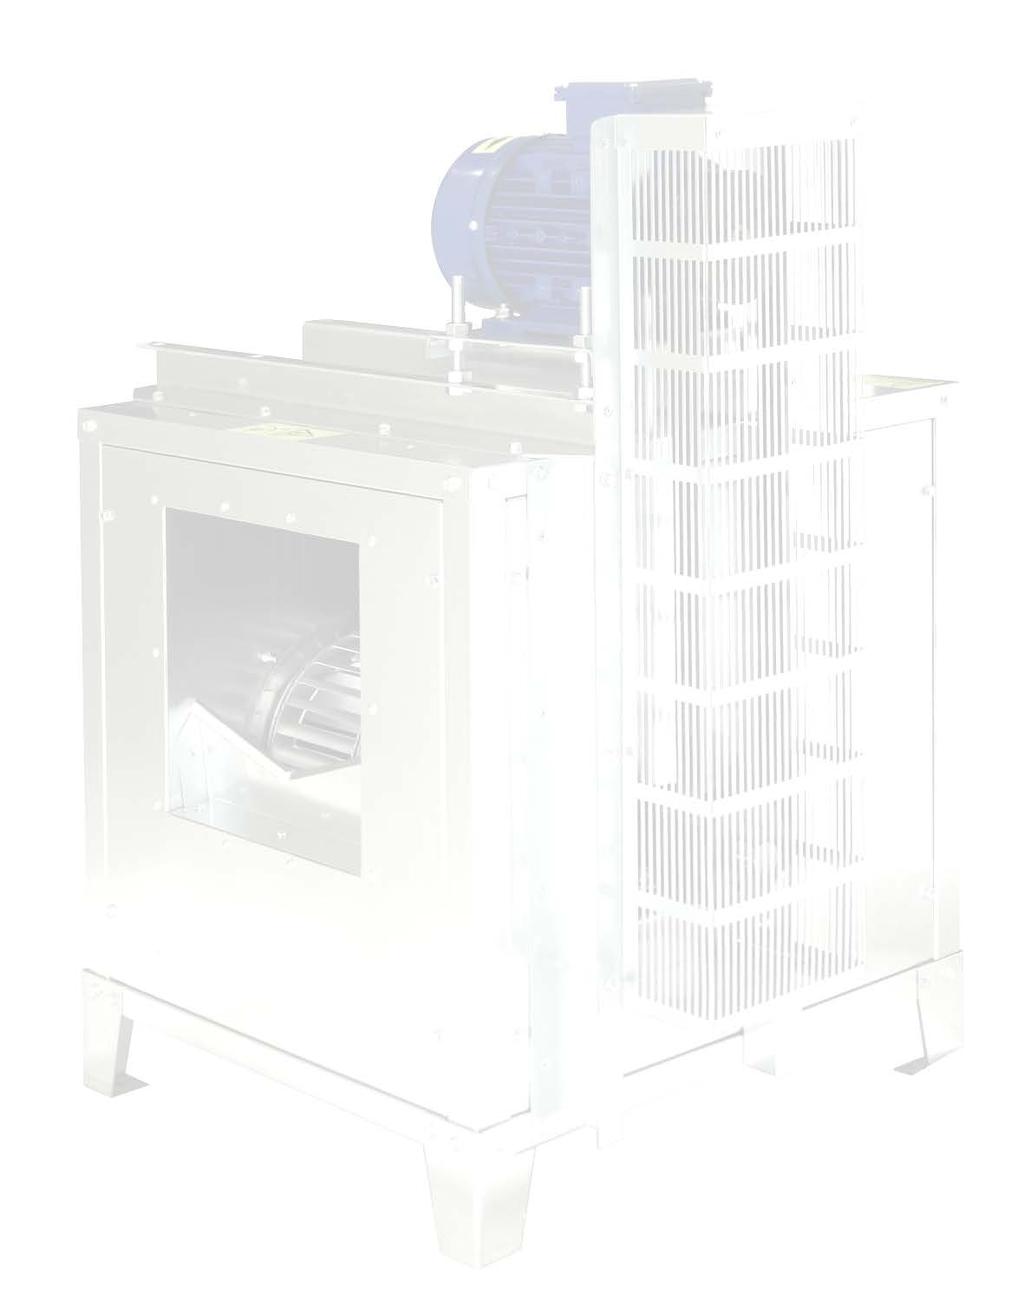 MCT F400 Ventilatori cassonati per l aspirazione dei fumi d incendio in accordo con la normativa EN12101-3 Smoke exhausting cabinet fan built according to EN 12101-3 Applicazioni I ventilatori